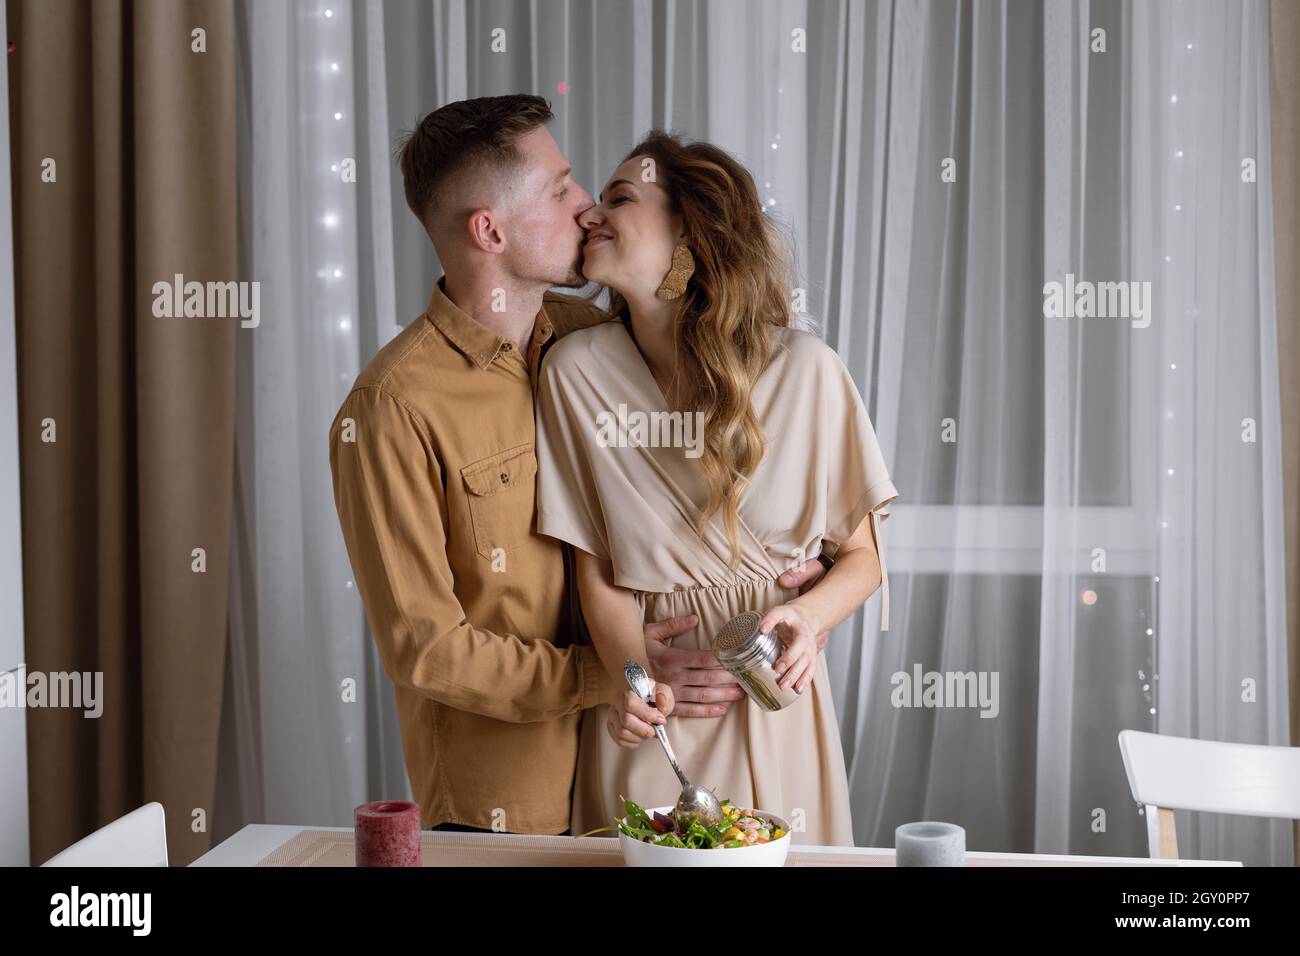 Una giovane coppia sta facendo una cena romantica insieme a casa - un uomo e una donna baciano appassionatamente vicino al tavolo. Foto Stock